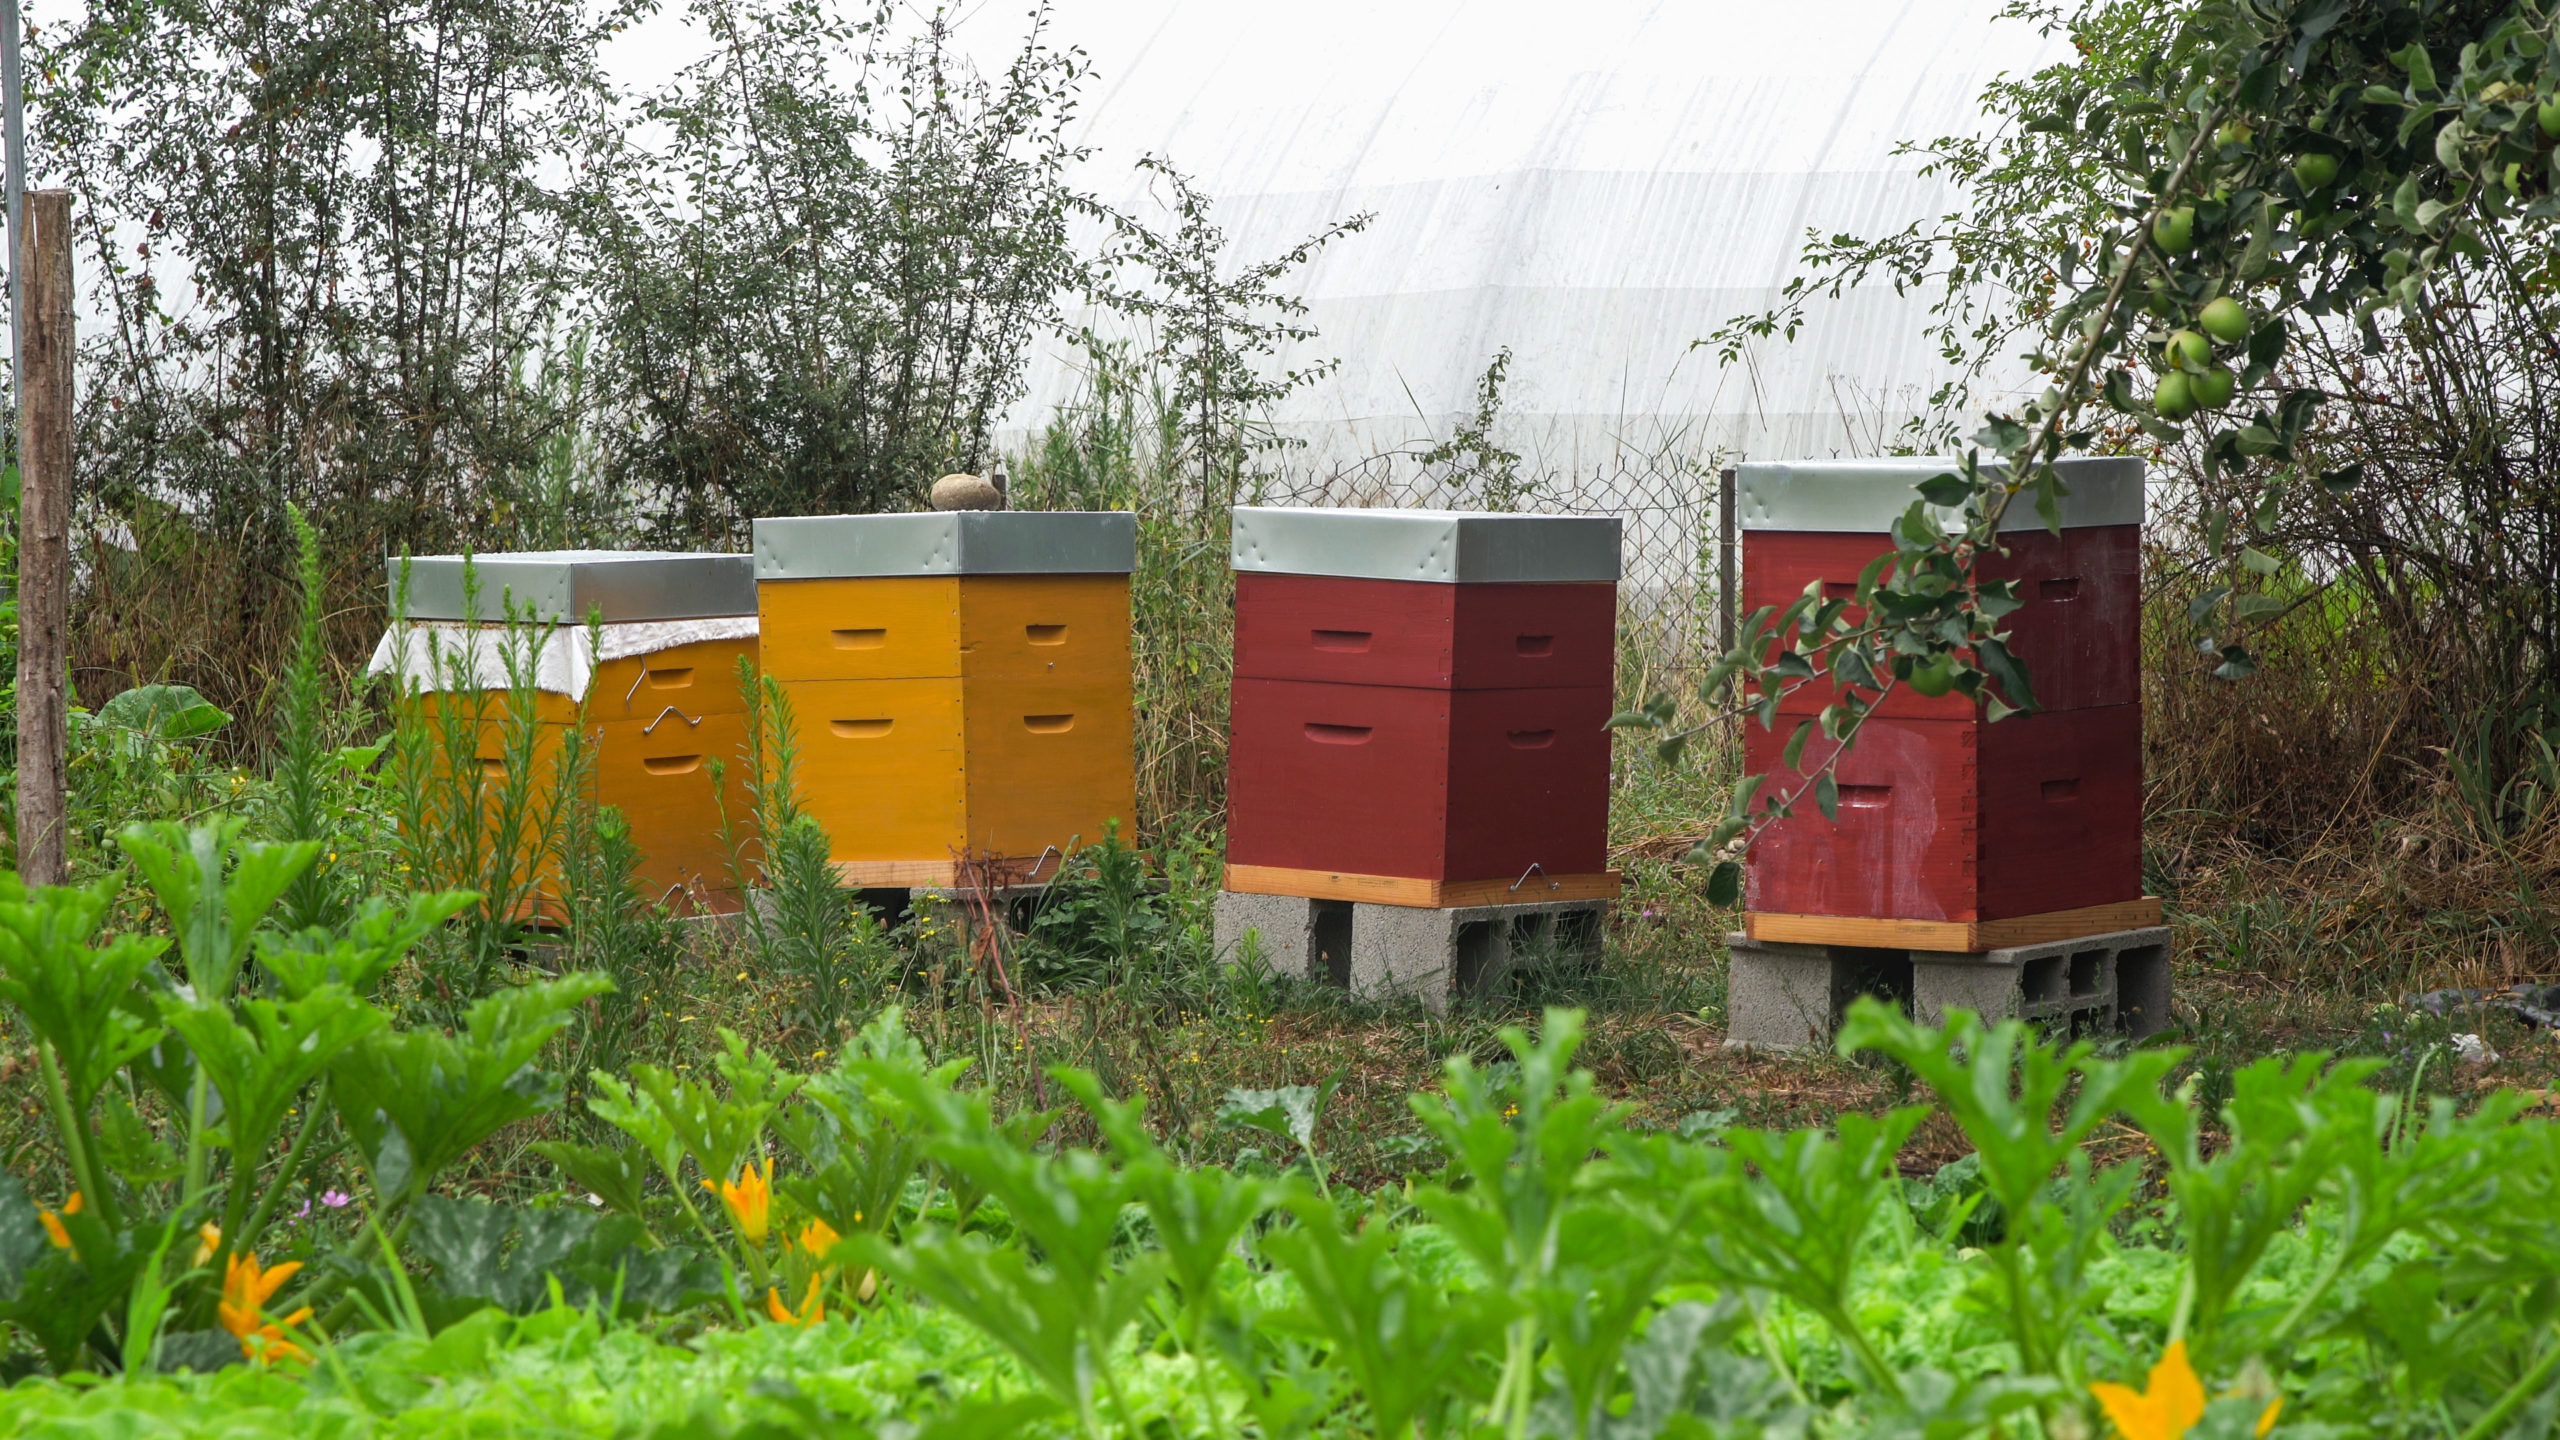 Nous avons acquis 3 ruches pour compléter l’approche. Nous aurons prochainement quelques brebis pour l’entretien des espaces et la production de viande.